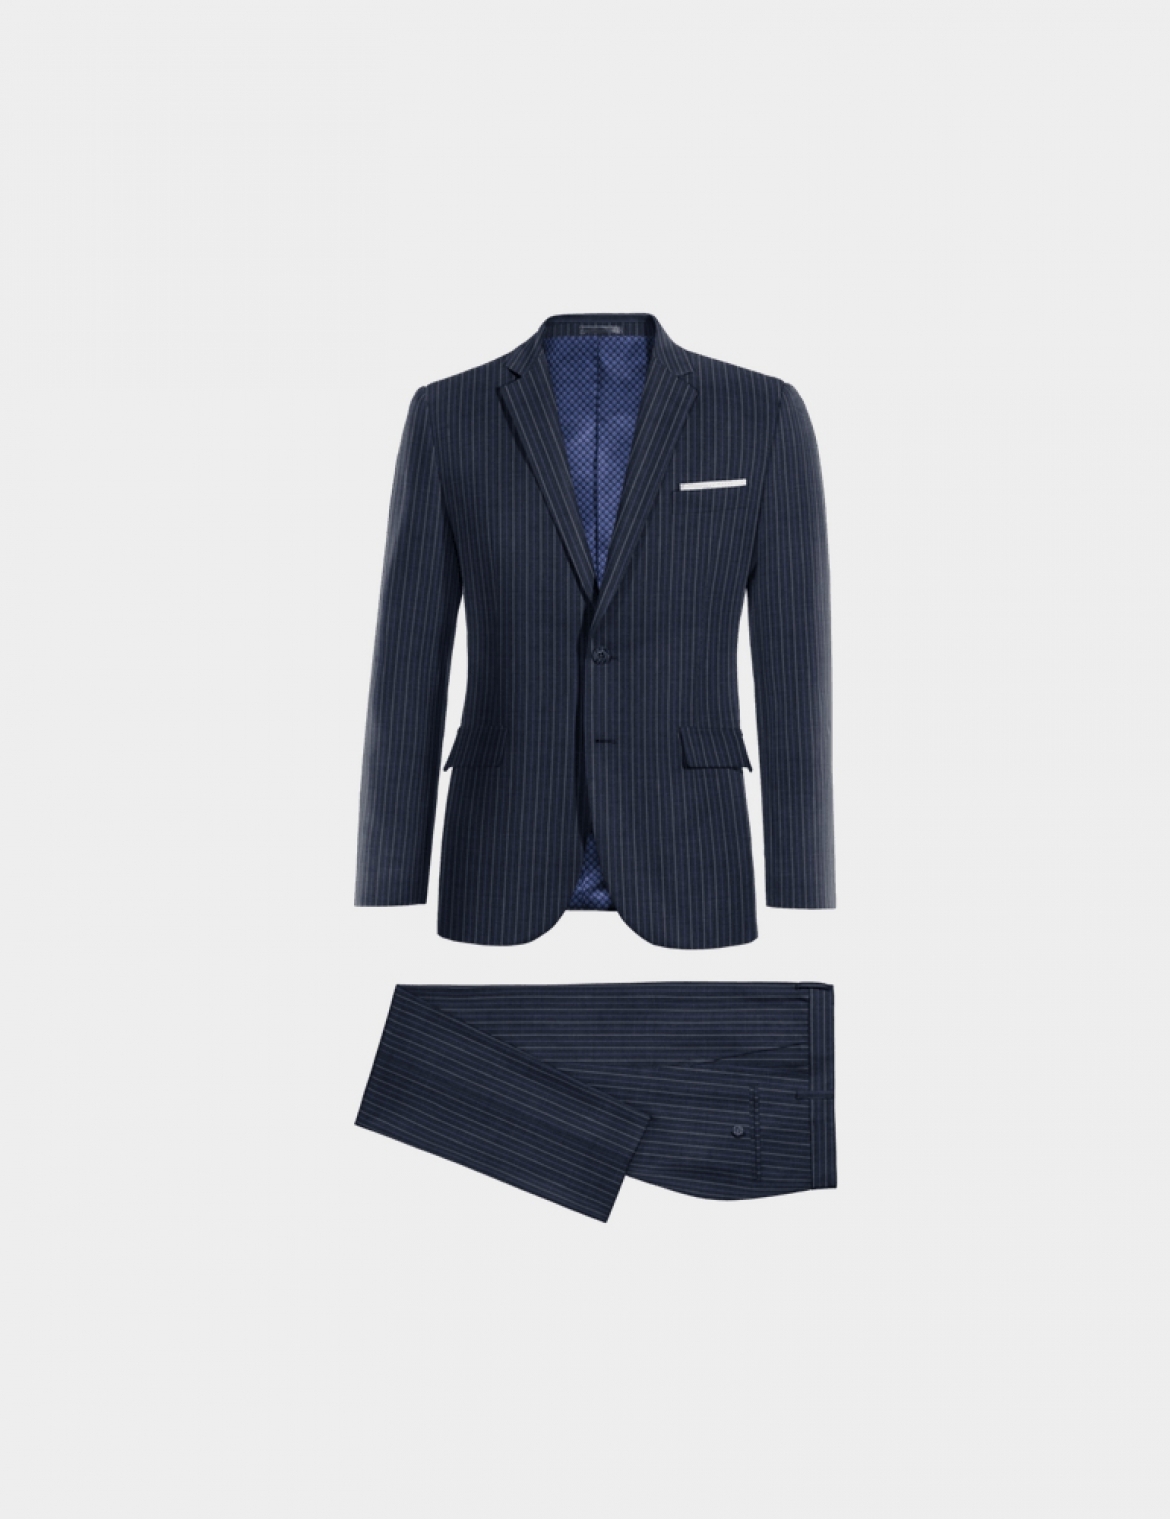 Blue Wool Blend Suit-